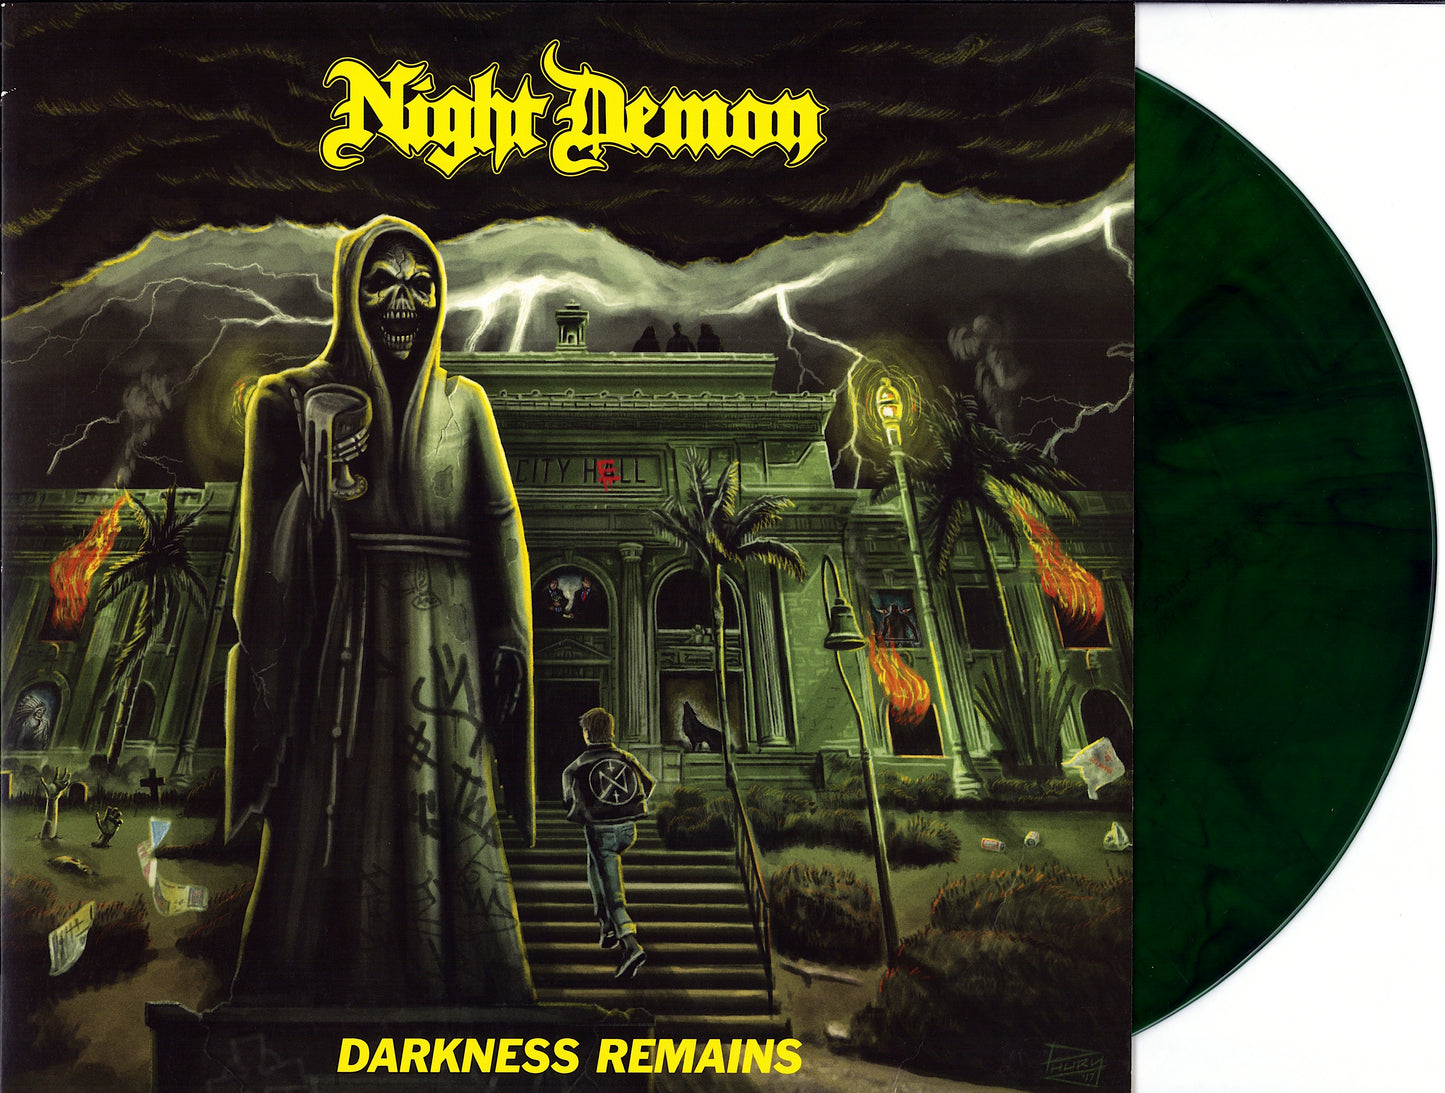 Night Demon – Darkness Remains Green Dark Marbled Vinyl LP + CD Limited Edition